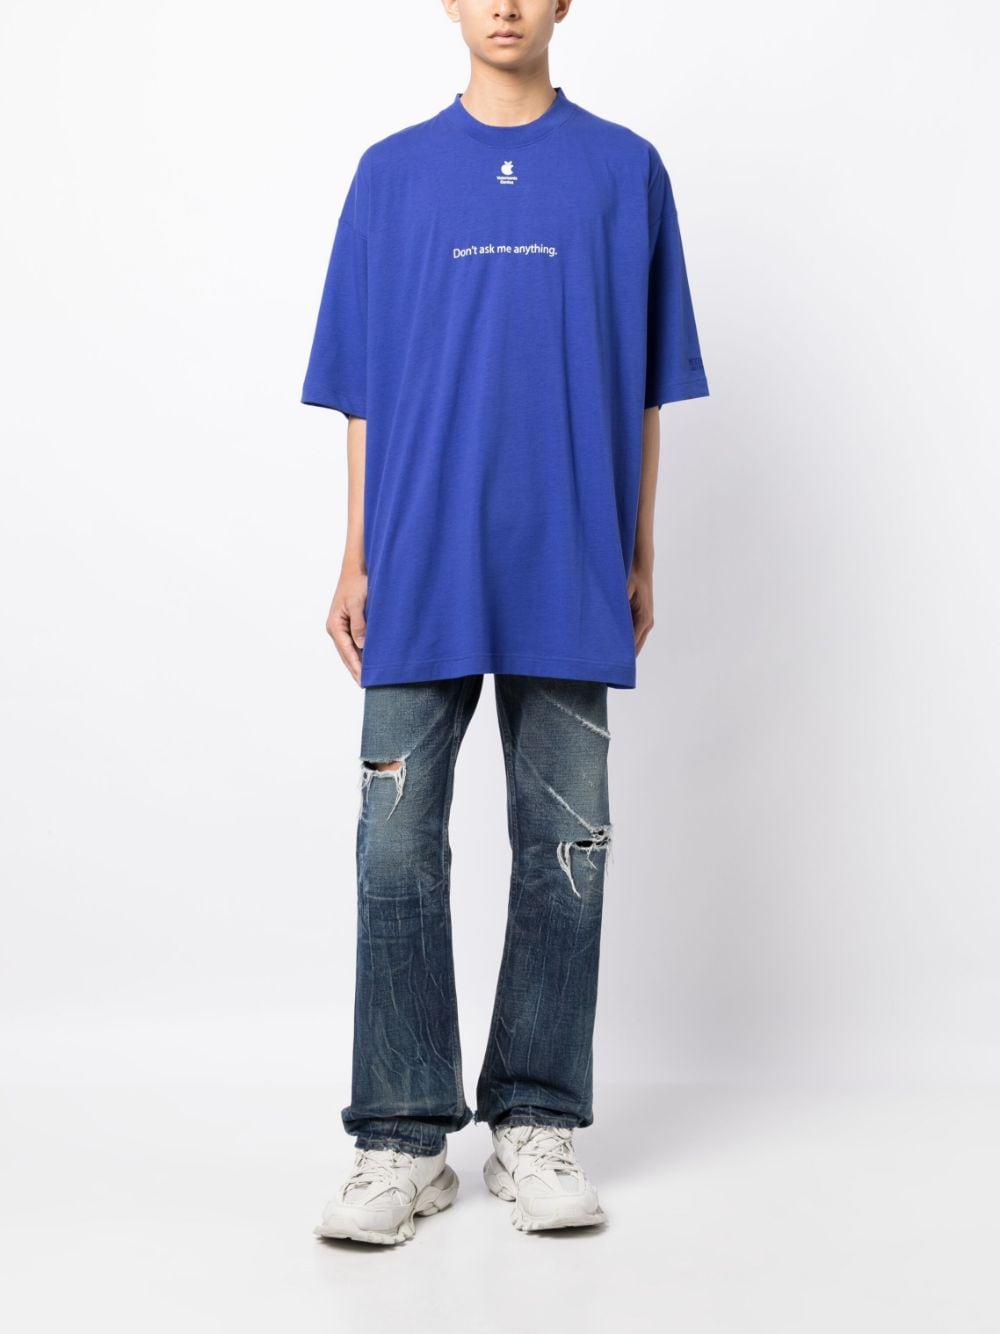 VETEMENTS x Apple T-shirt met tekst - Blauw